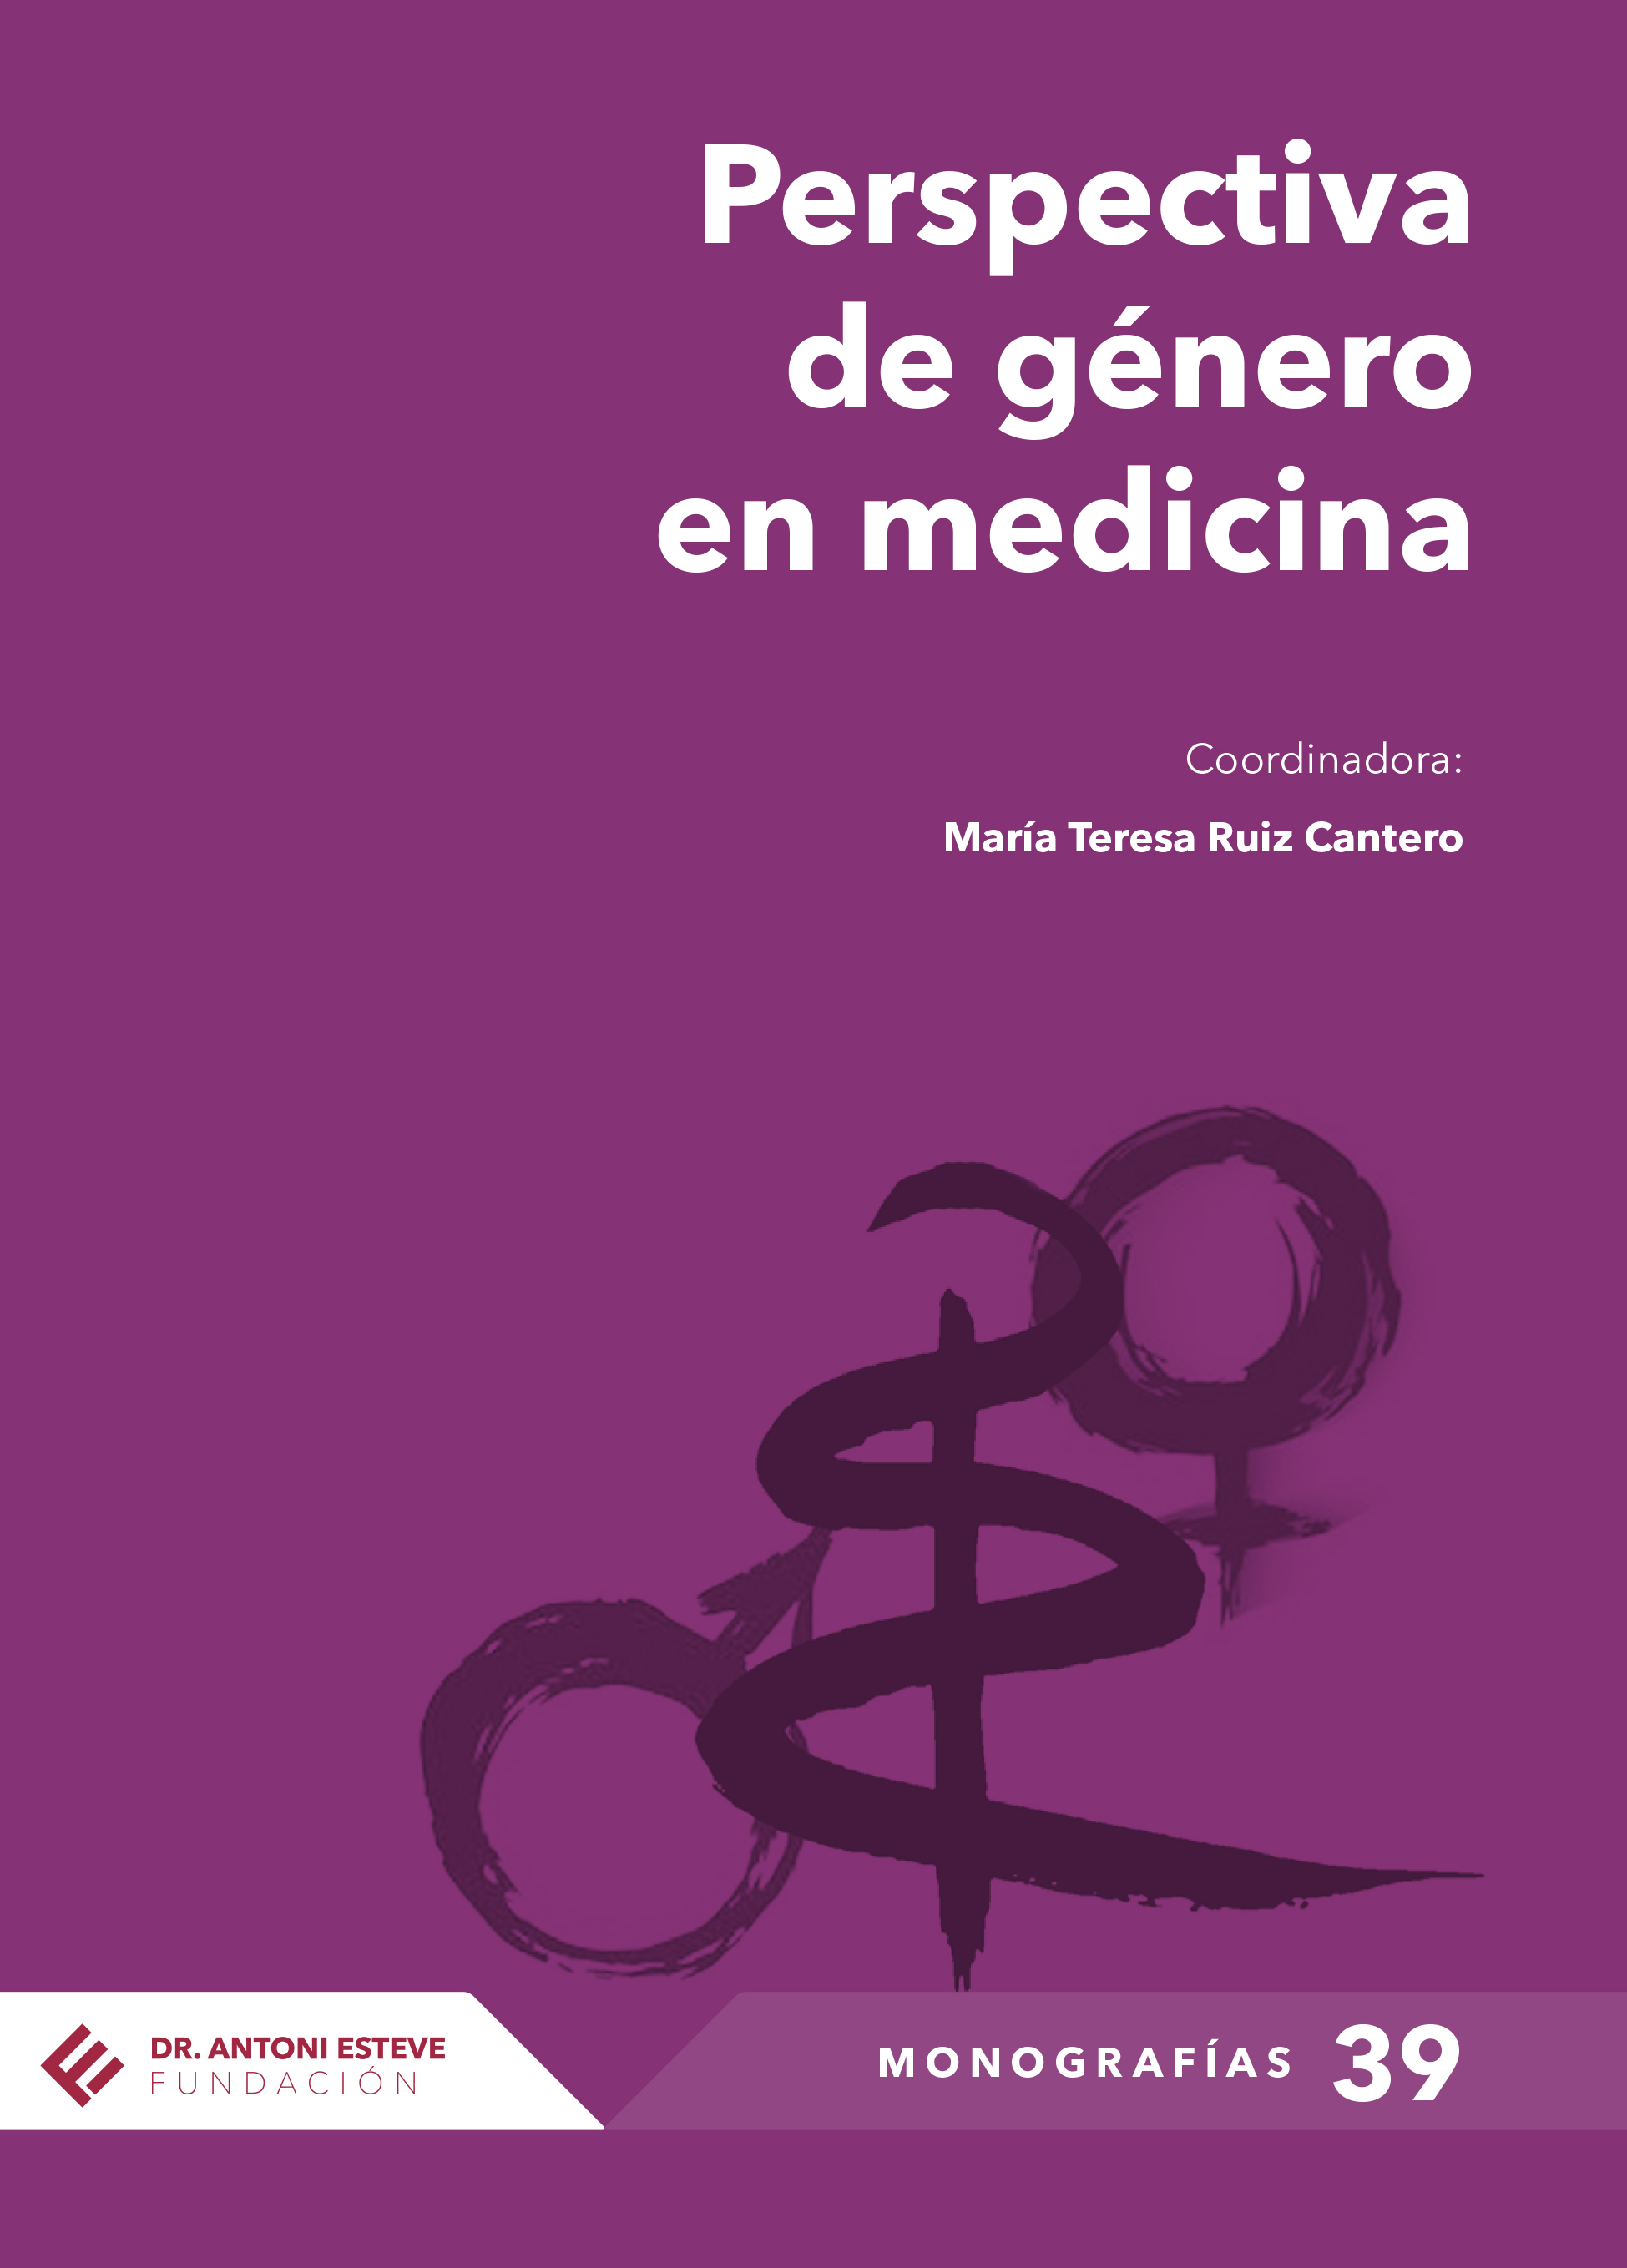 Portada Monografia 39 Perspectiva de género en medicina | Fundación Dr.  Antoni Esteve